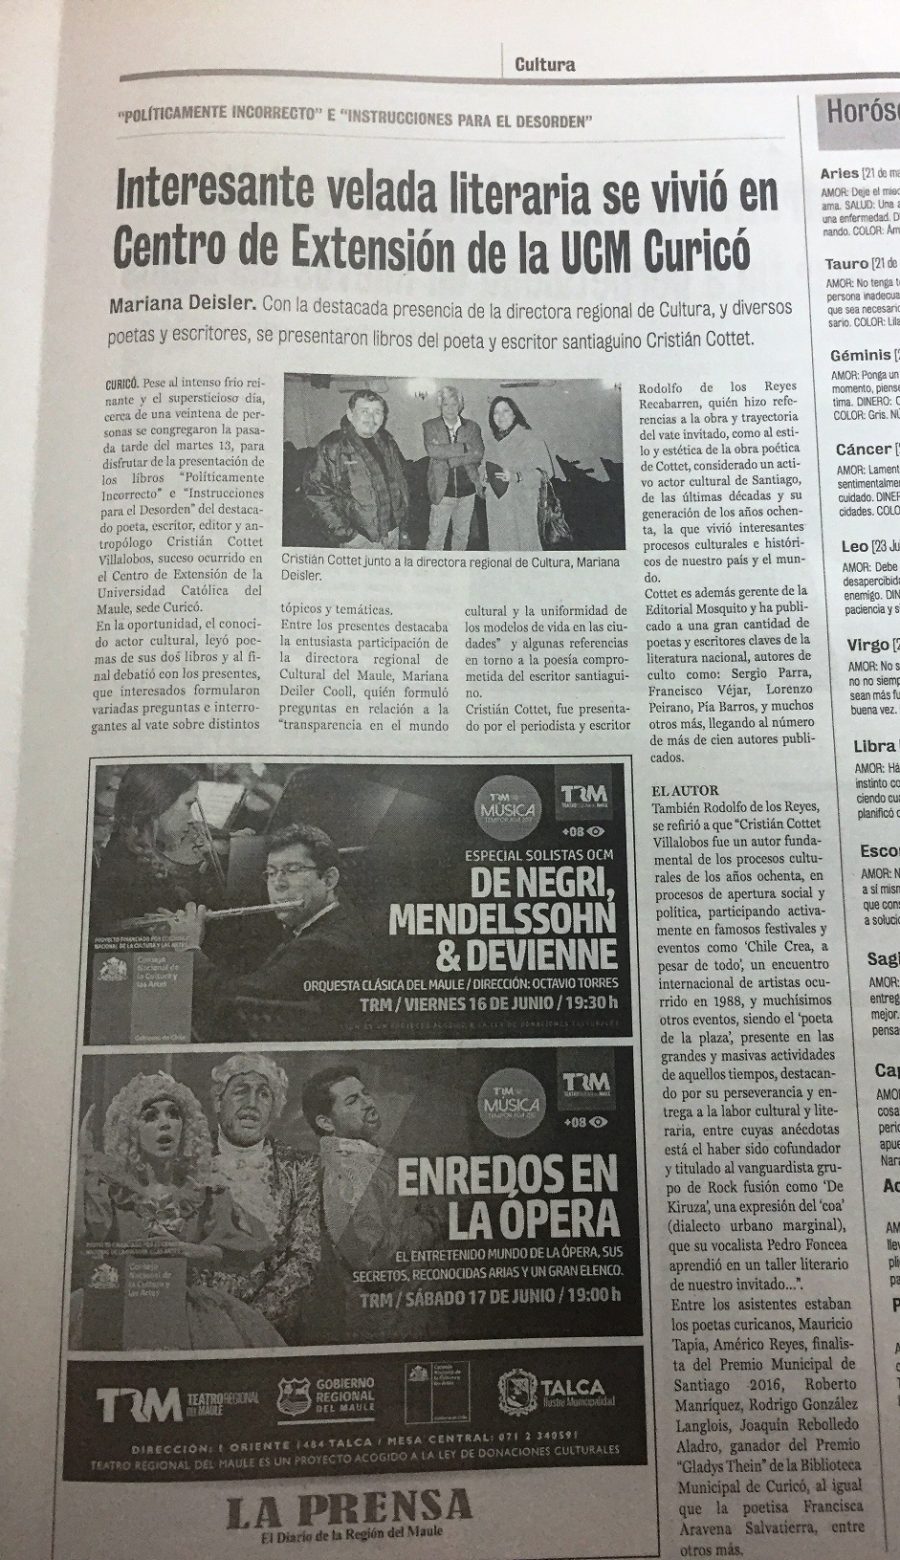 16 de junio en Diario La Prensa: “Interesante velada literaria se vivió en Centro de Extensión de la UCM Curicó”